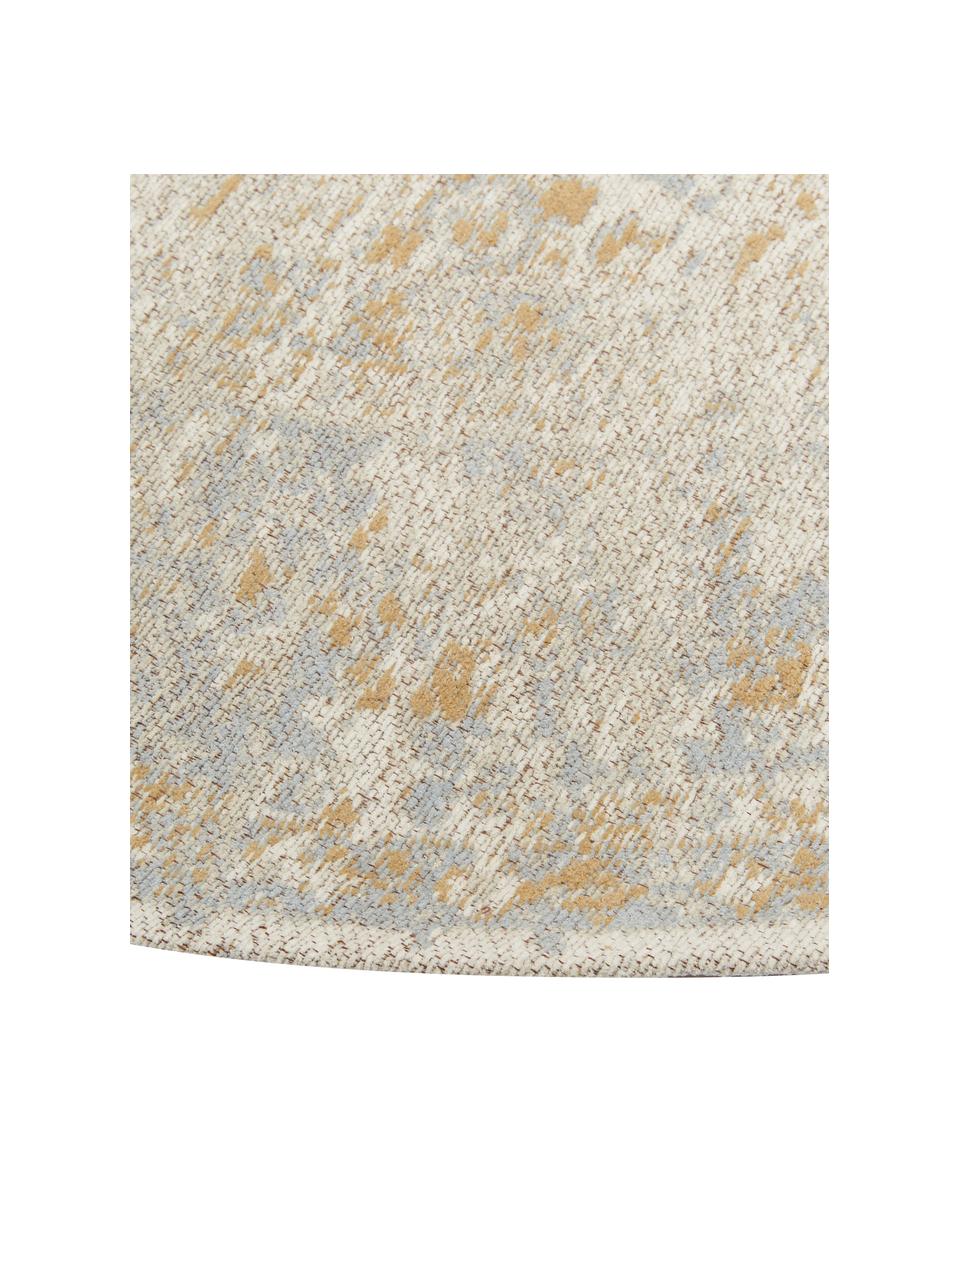 Runder Chenilleteppich Loire, handgewebt, Flor: 95 % Baumwolle, 5 % Polye, Beigetöne, Ø 200 cm (Größe L)